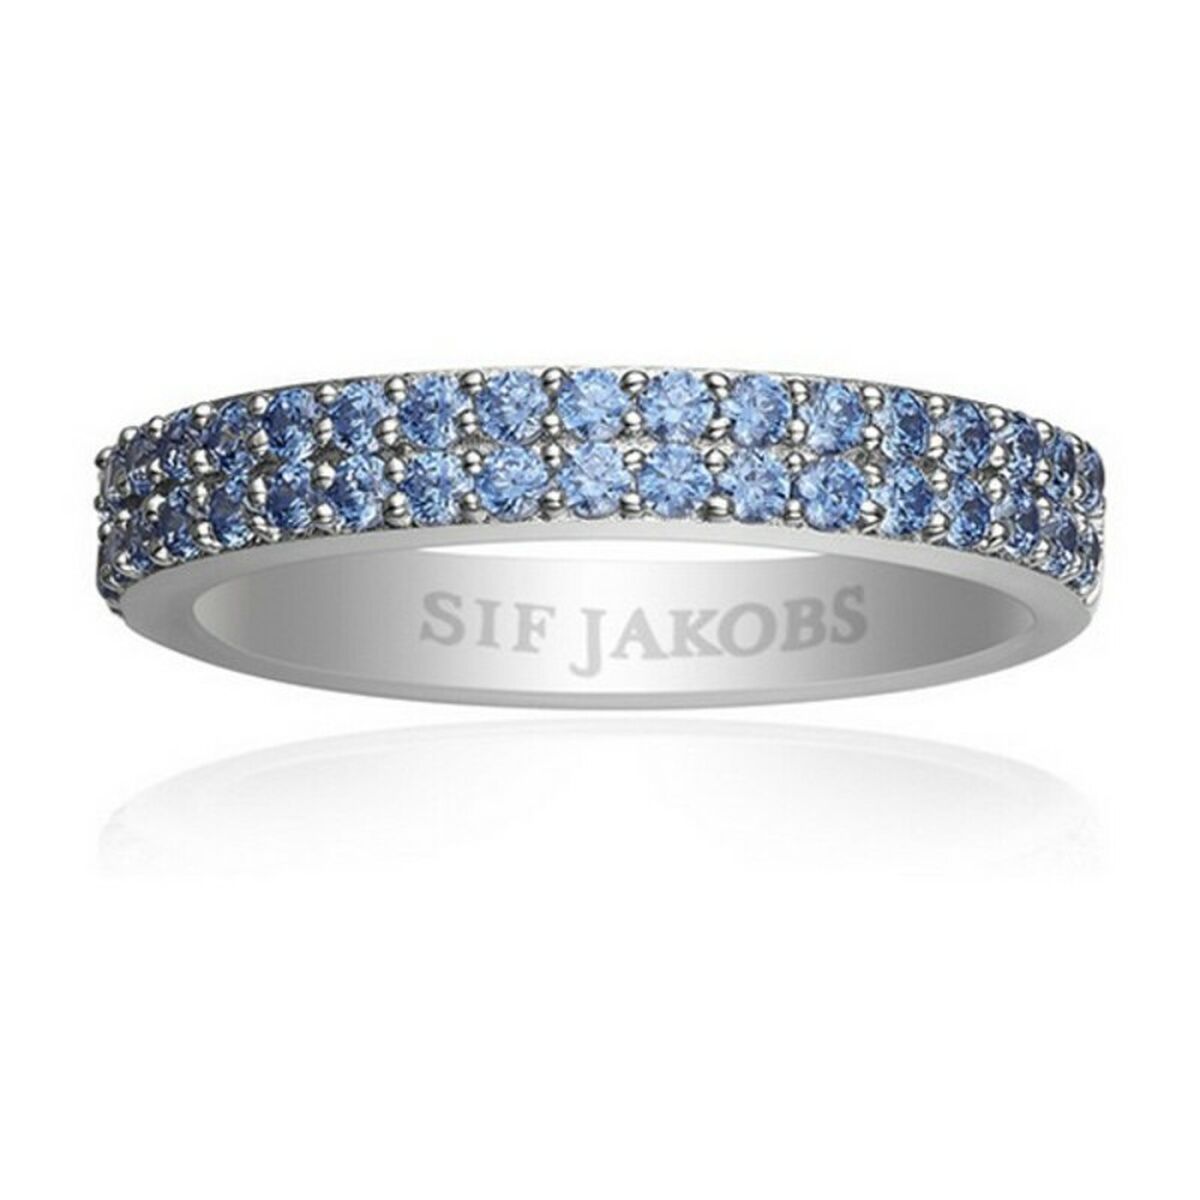 Bague Femme Sif Jakobs R10762-BLUE-BK